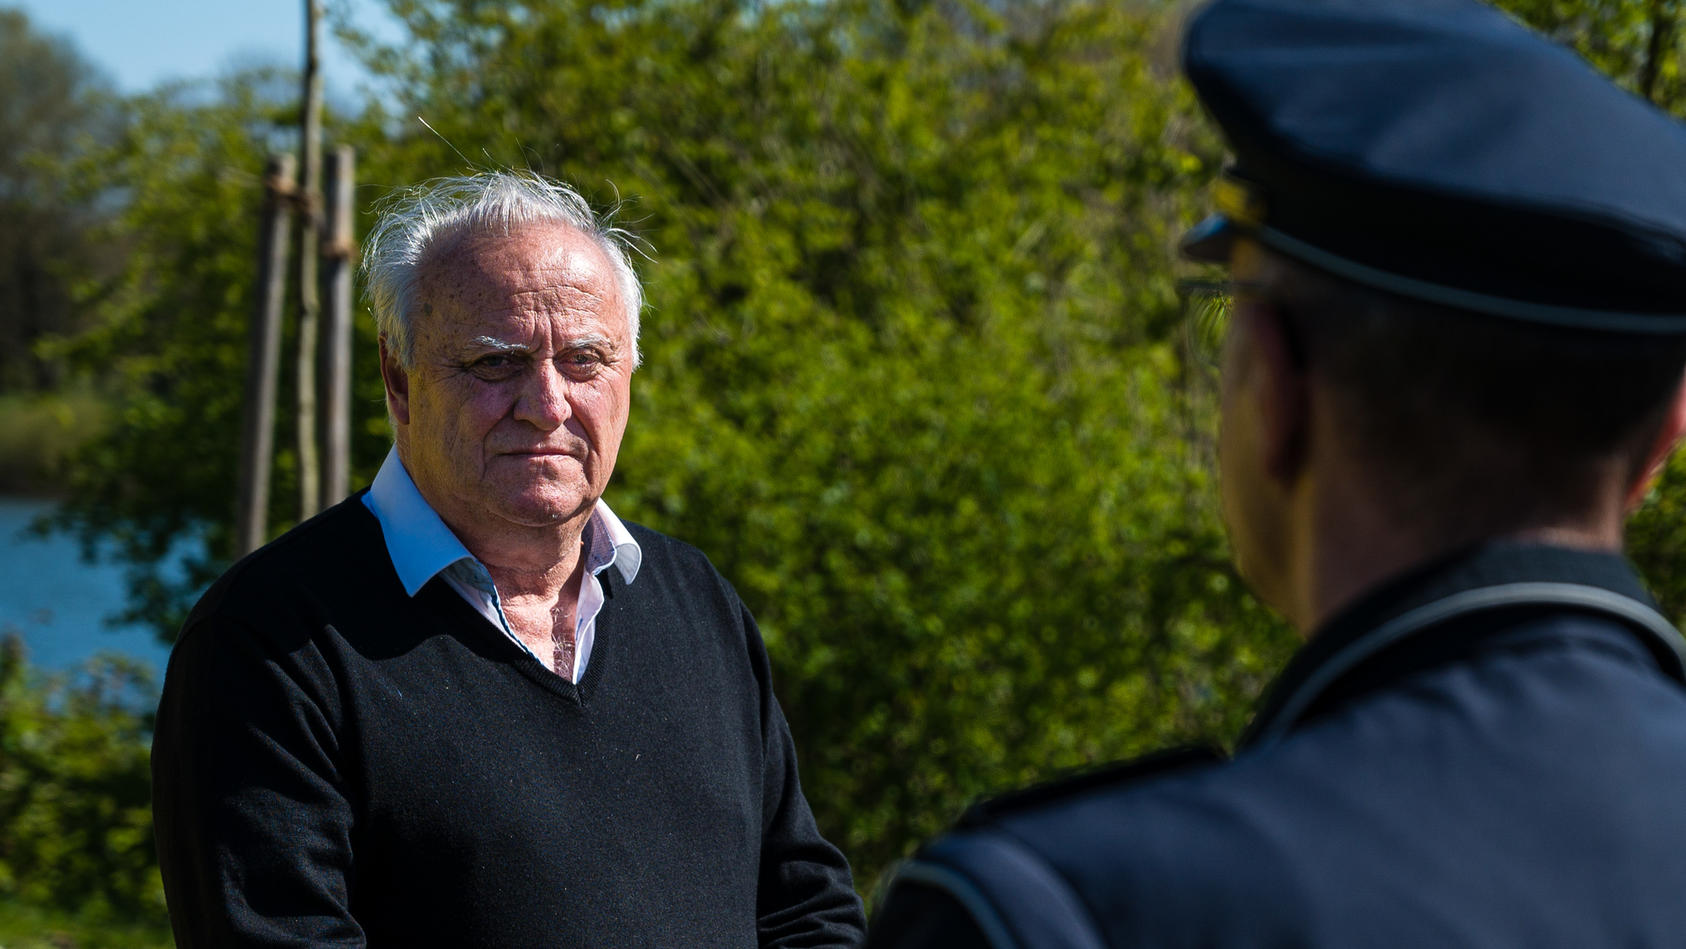 Klaus Bouillon (CDU), saarländischer Innenminister, informiert sich bei einem Polizisten über die Lage an den Grünflächen der Stadt Saarbrücken.